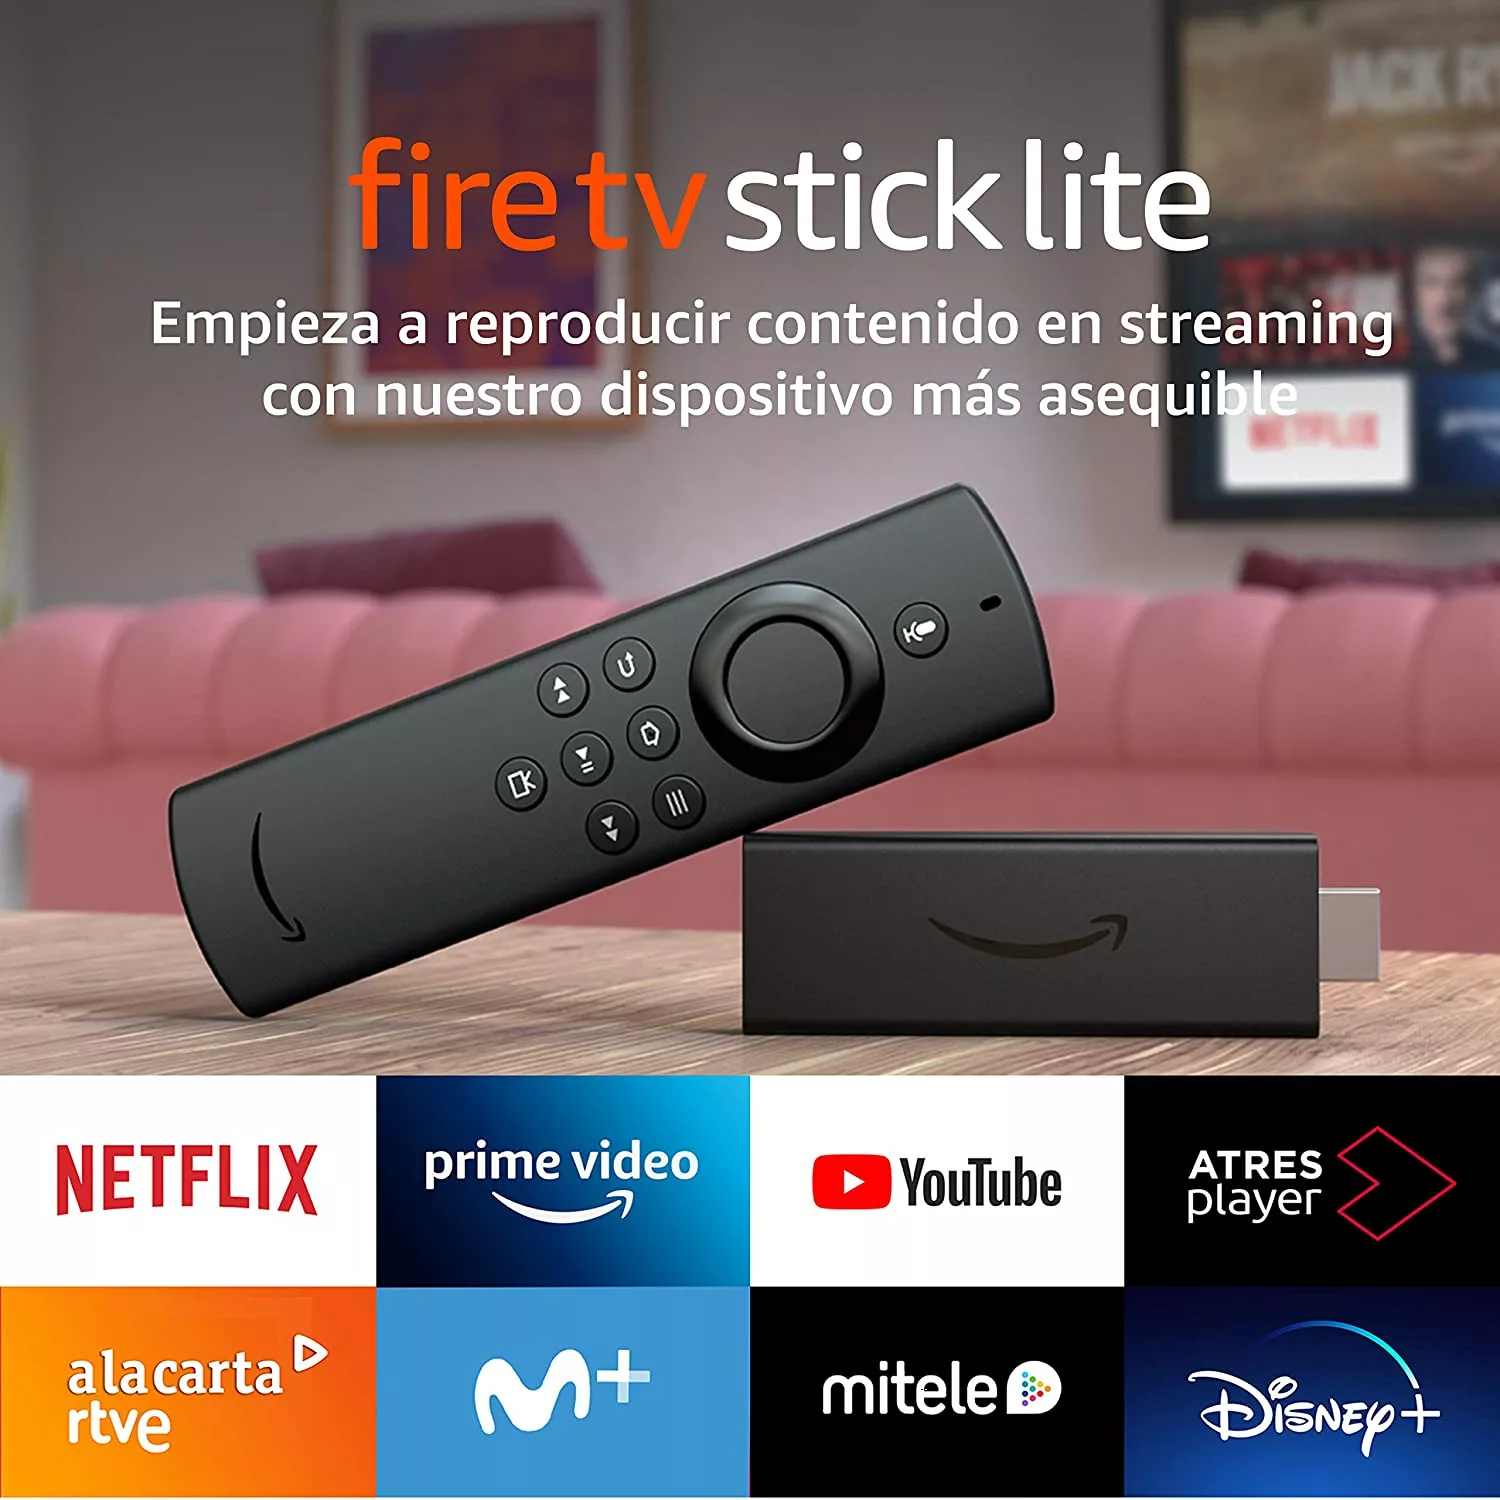 Fire TV Stick 4K Max, análisis con opiniones y características